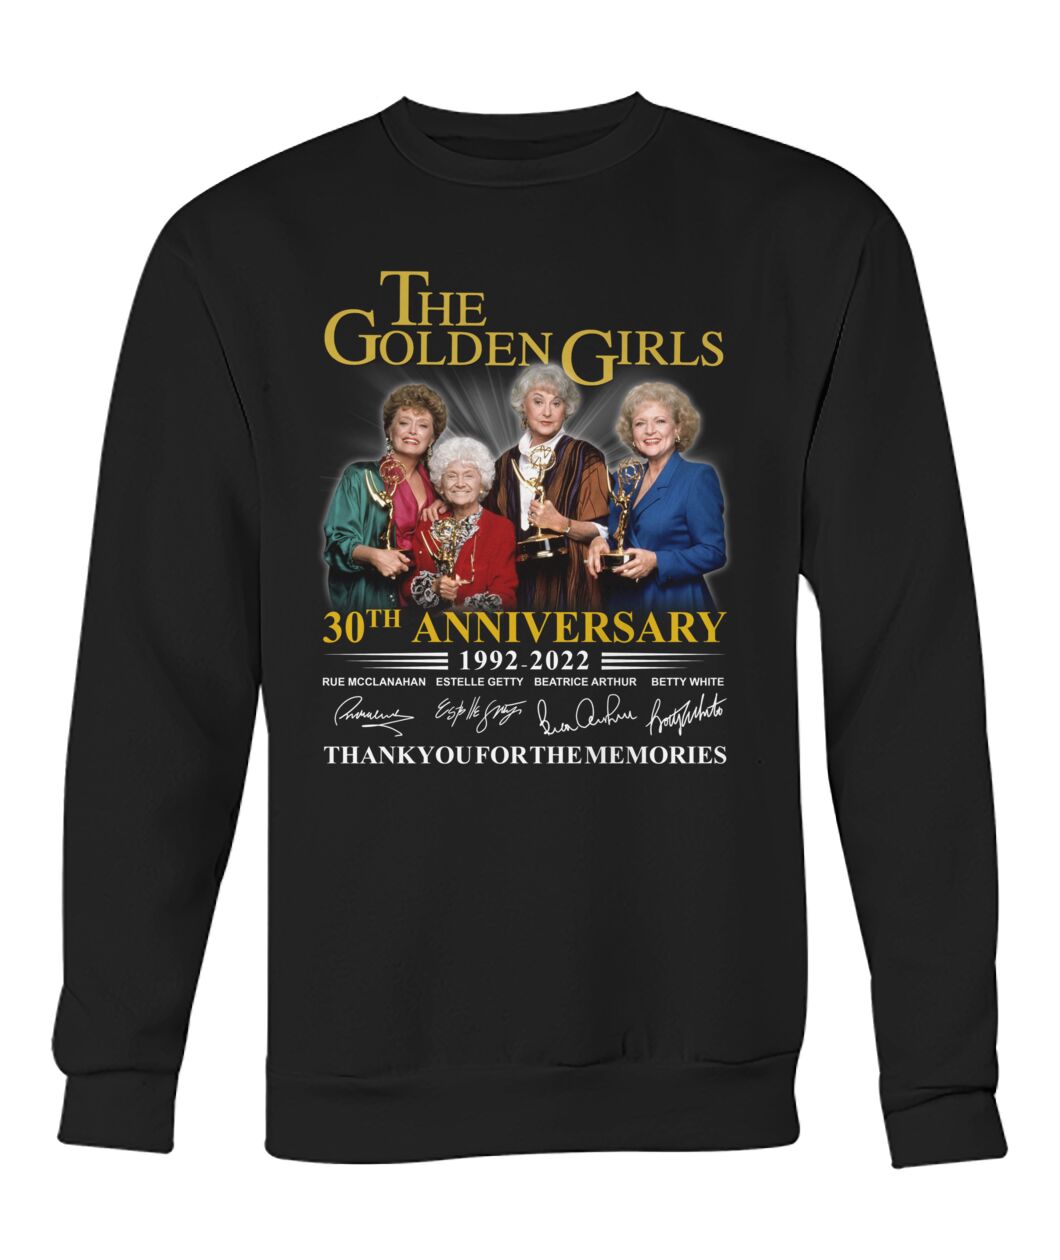 The Golden Girls 30th Anniversary 1992-2022 shirt, hoodie 11